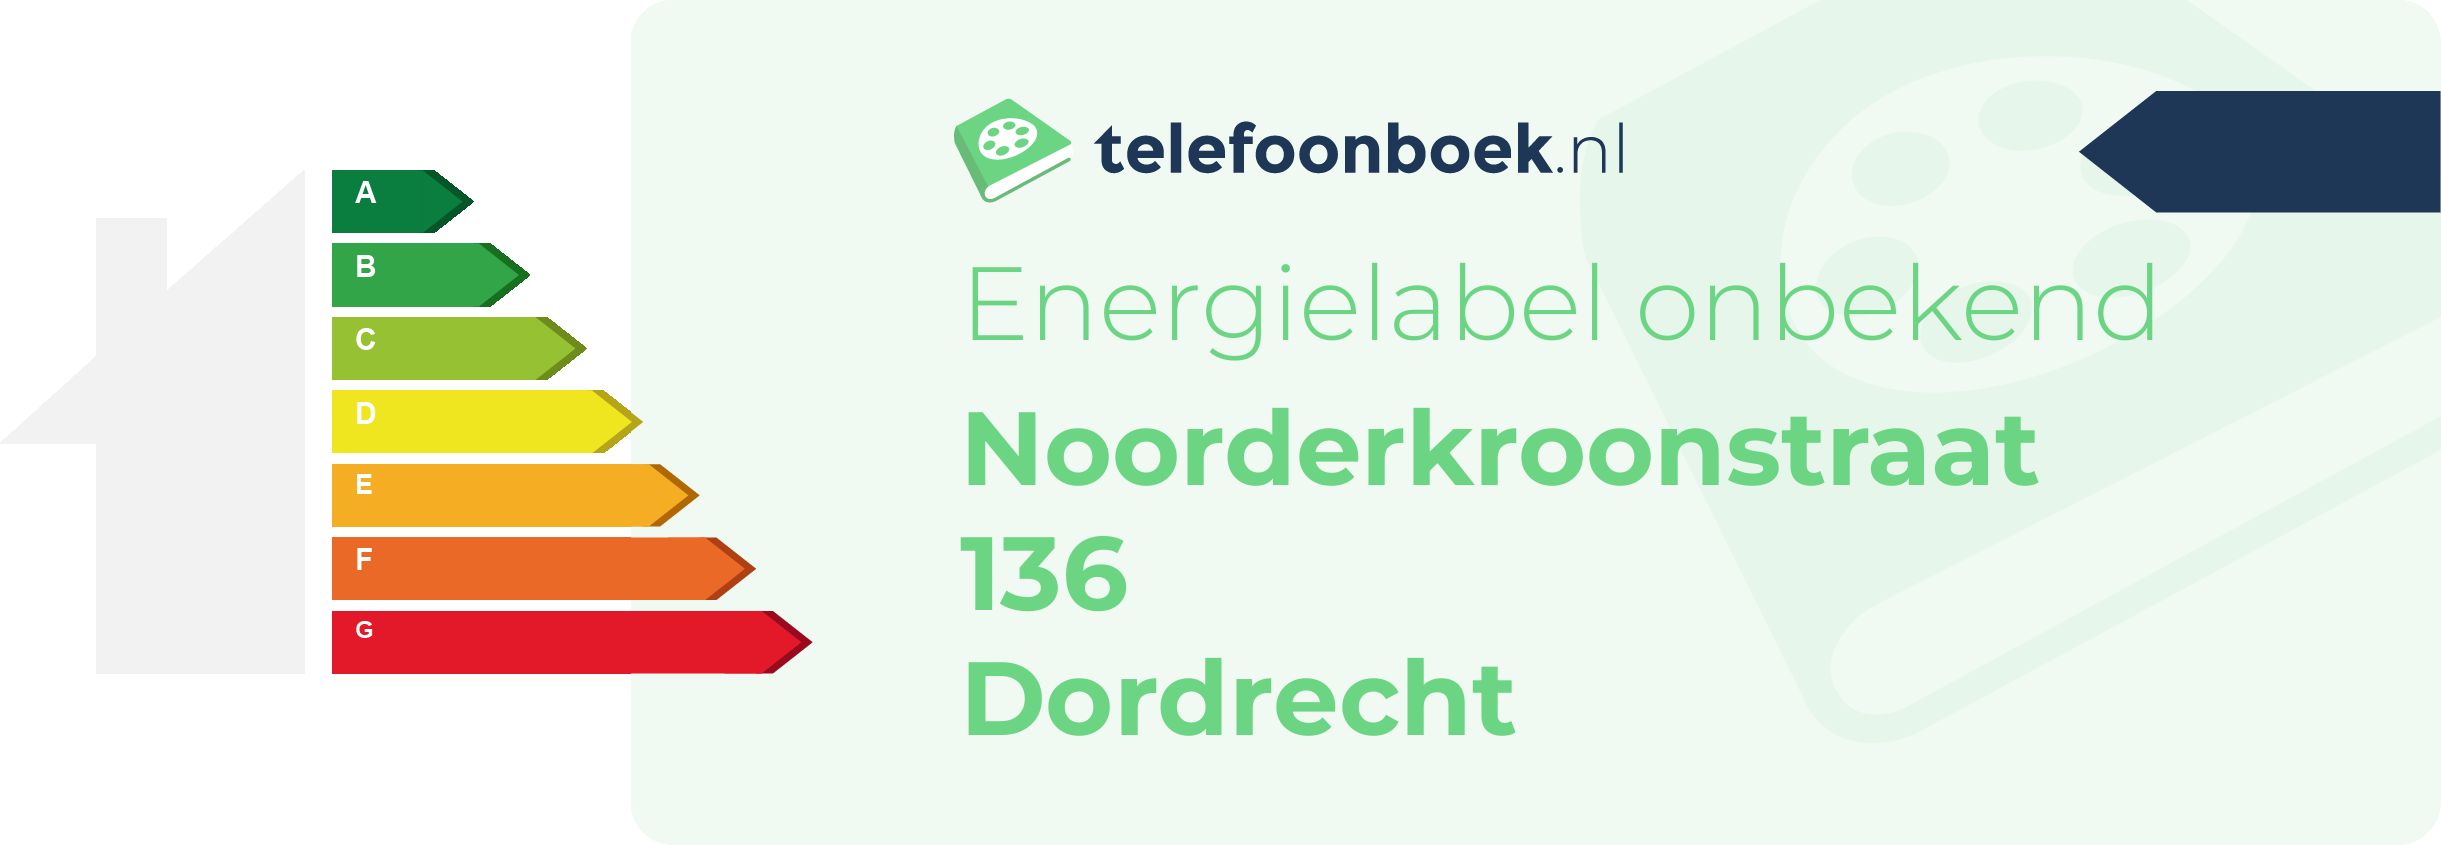 Energielabel Noorderkroonstraat 136 Dordrecht